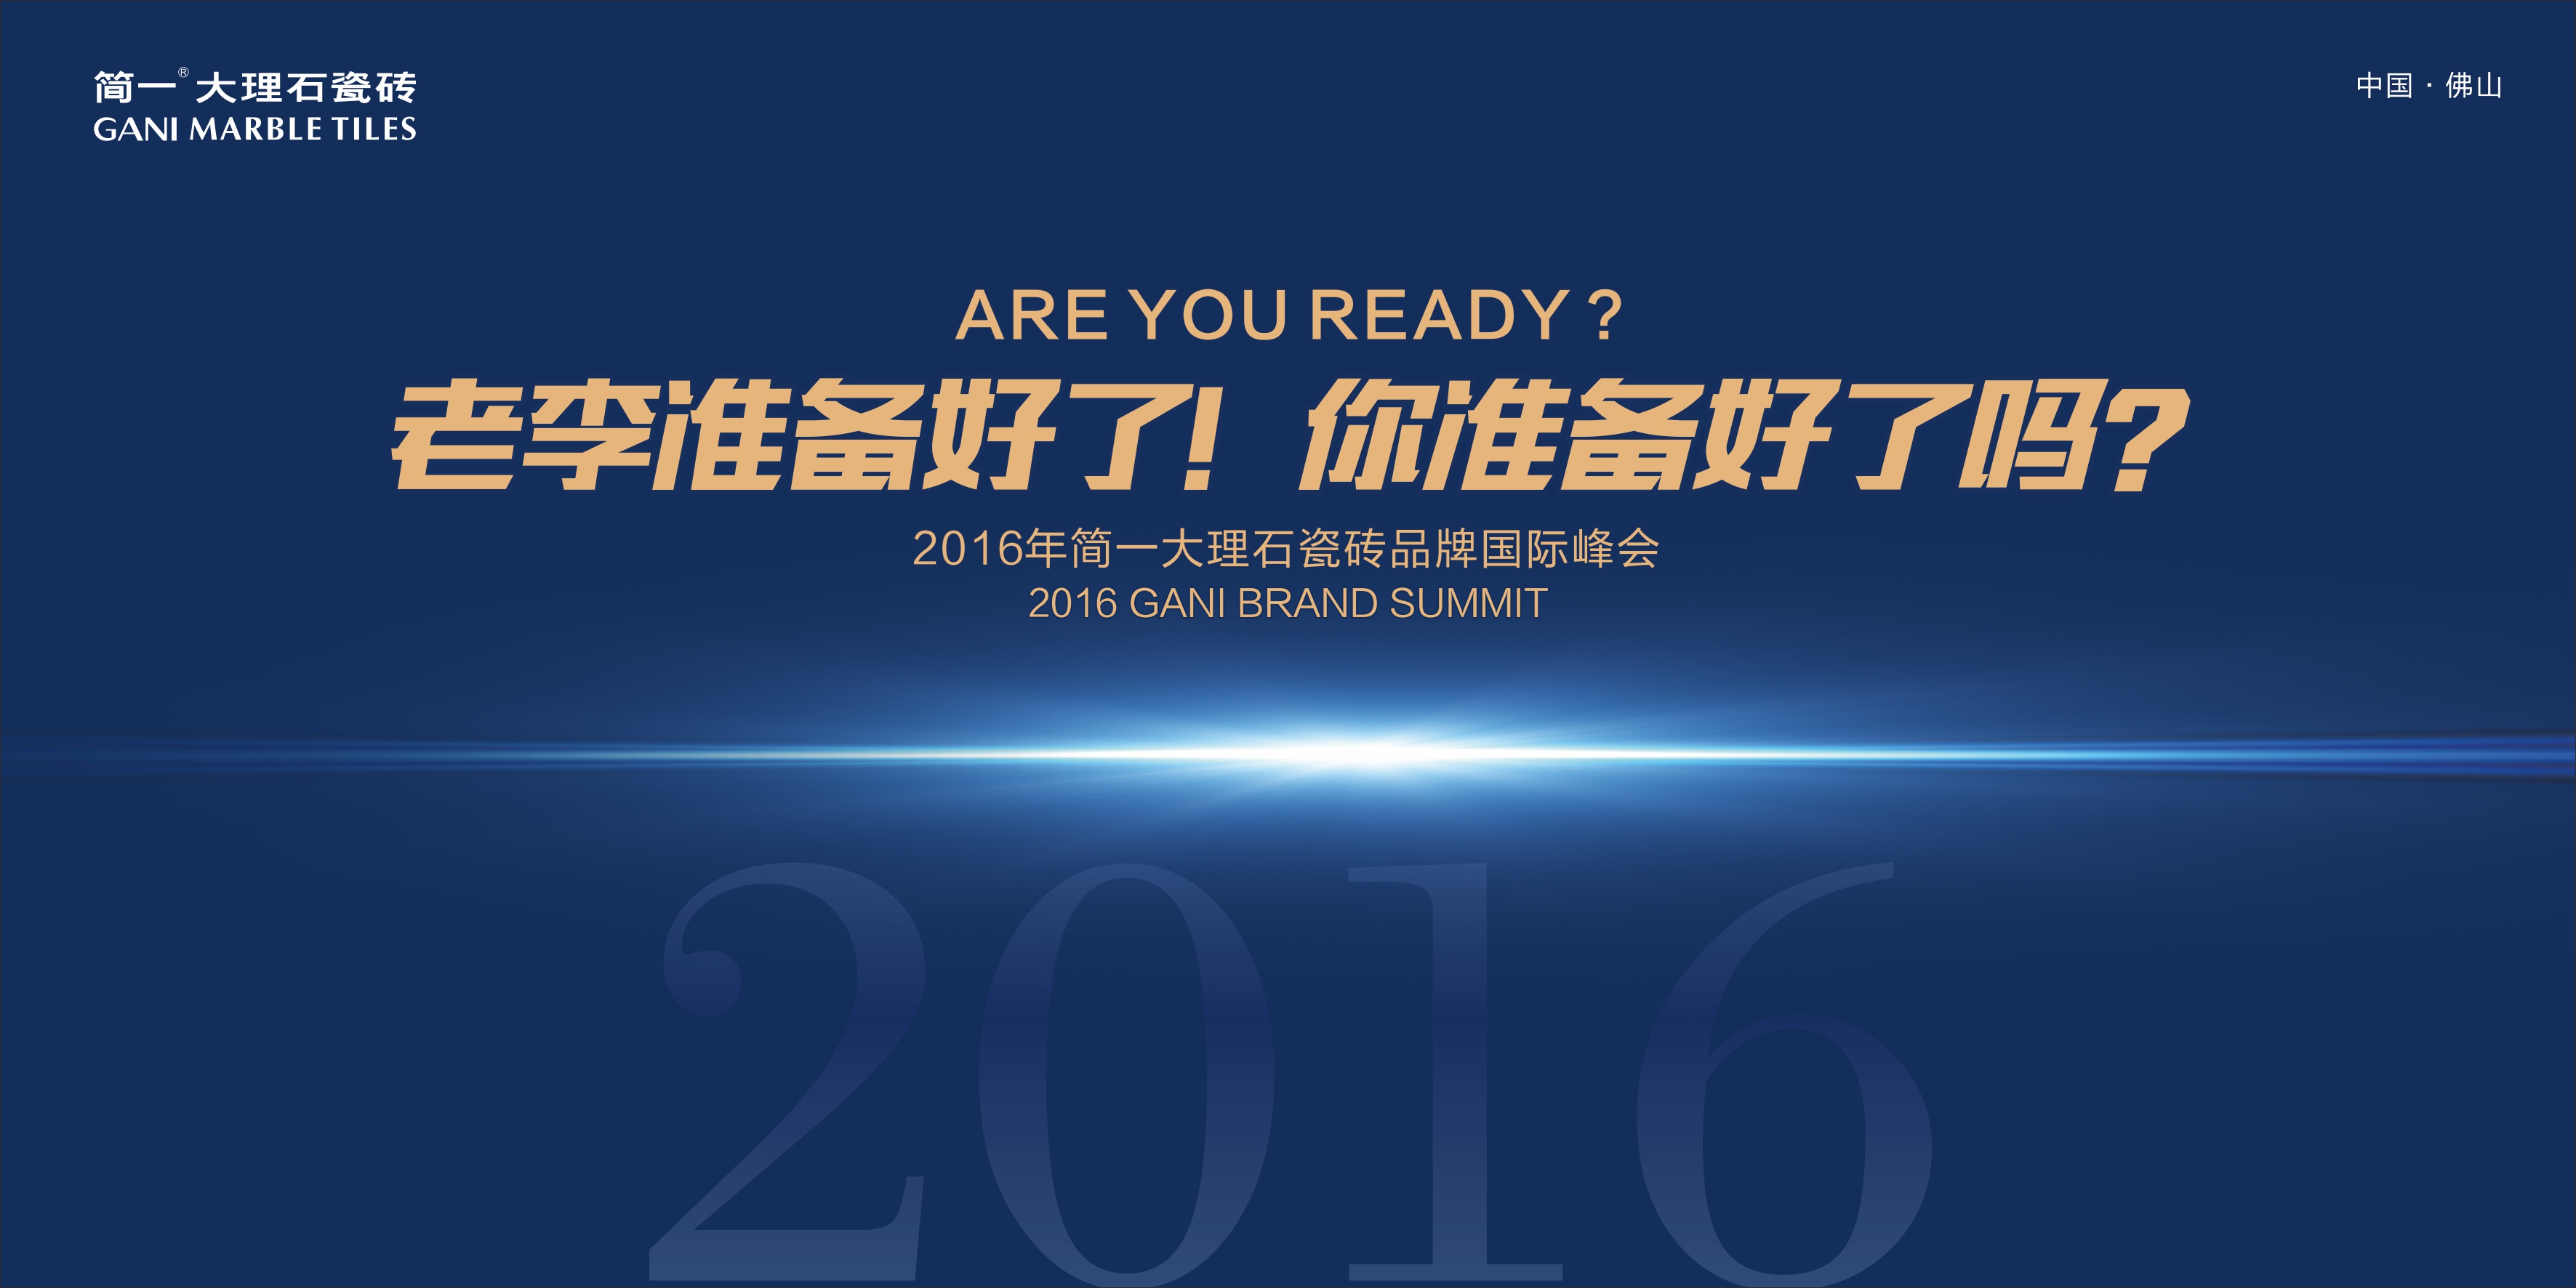 老李准备好了！你准备好了吗？ ——2016简一大理石瓷砖品牌国际峰会圆满举行...